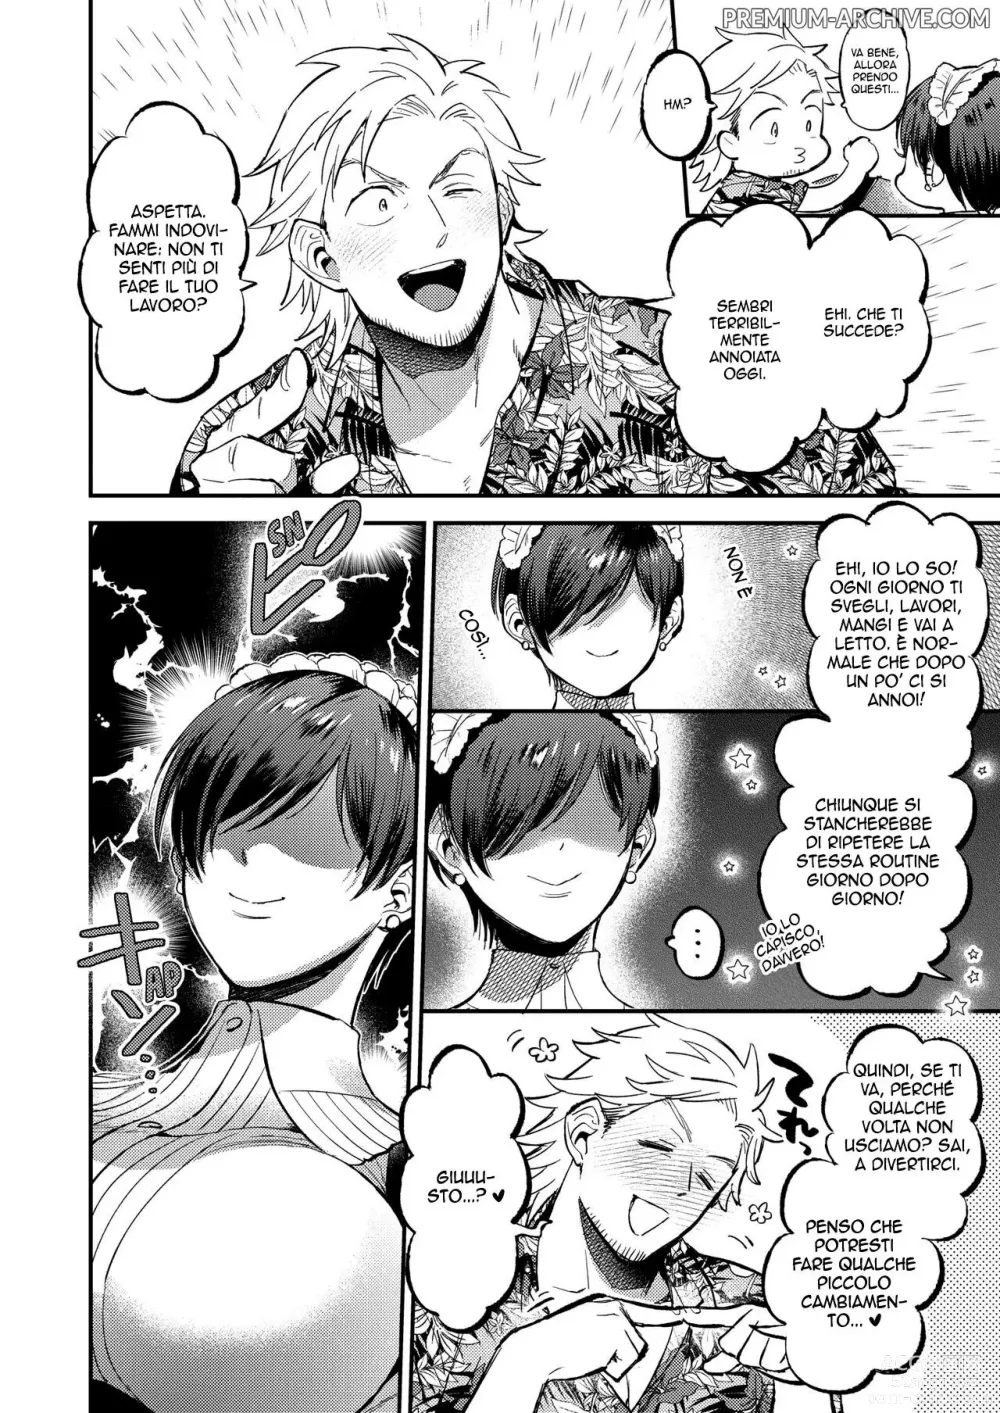 Page 4 of manga La Domestica in Lavanderia